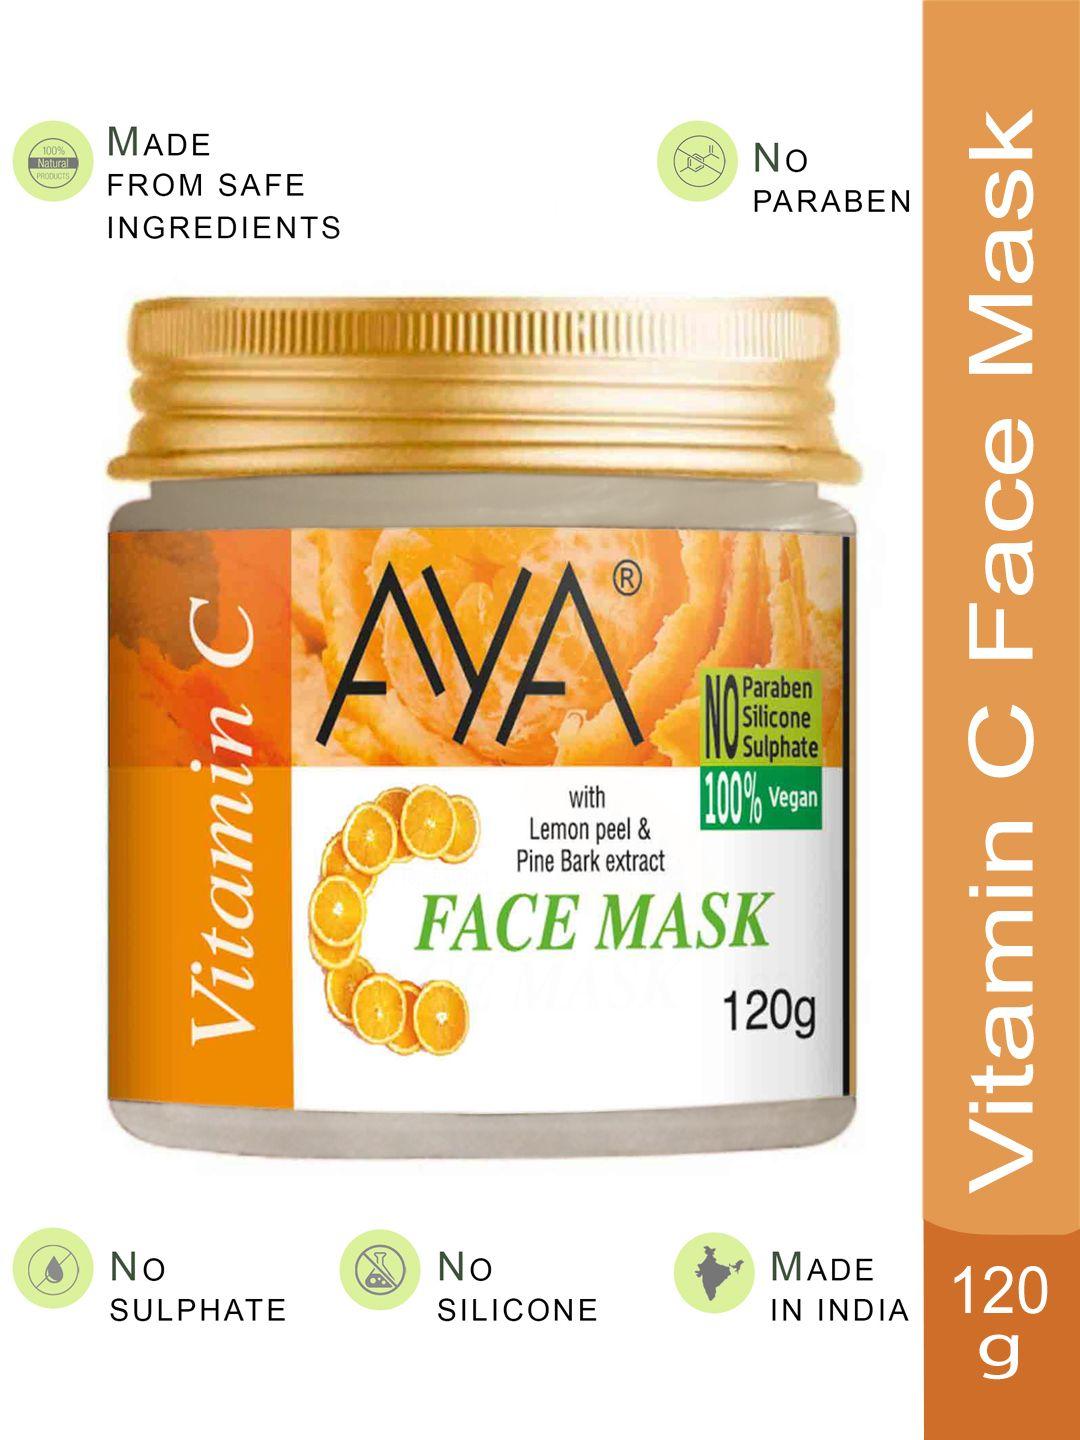 aya paraben-free & silicone-free vitamin c face mask with lemon peel - 120 g